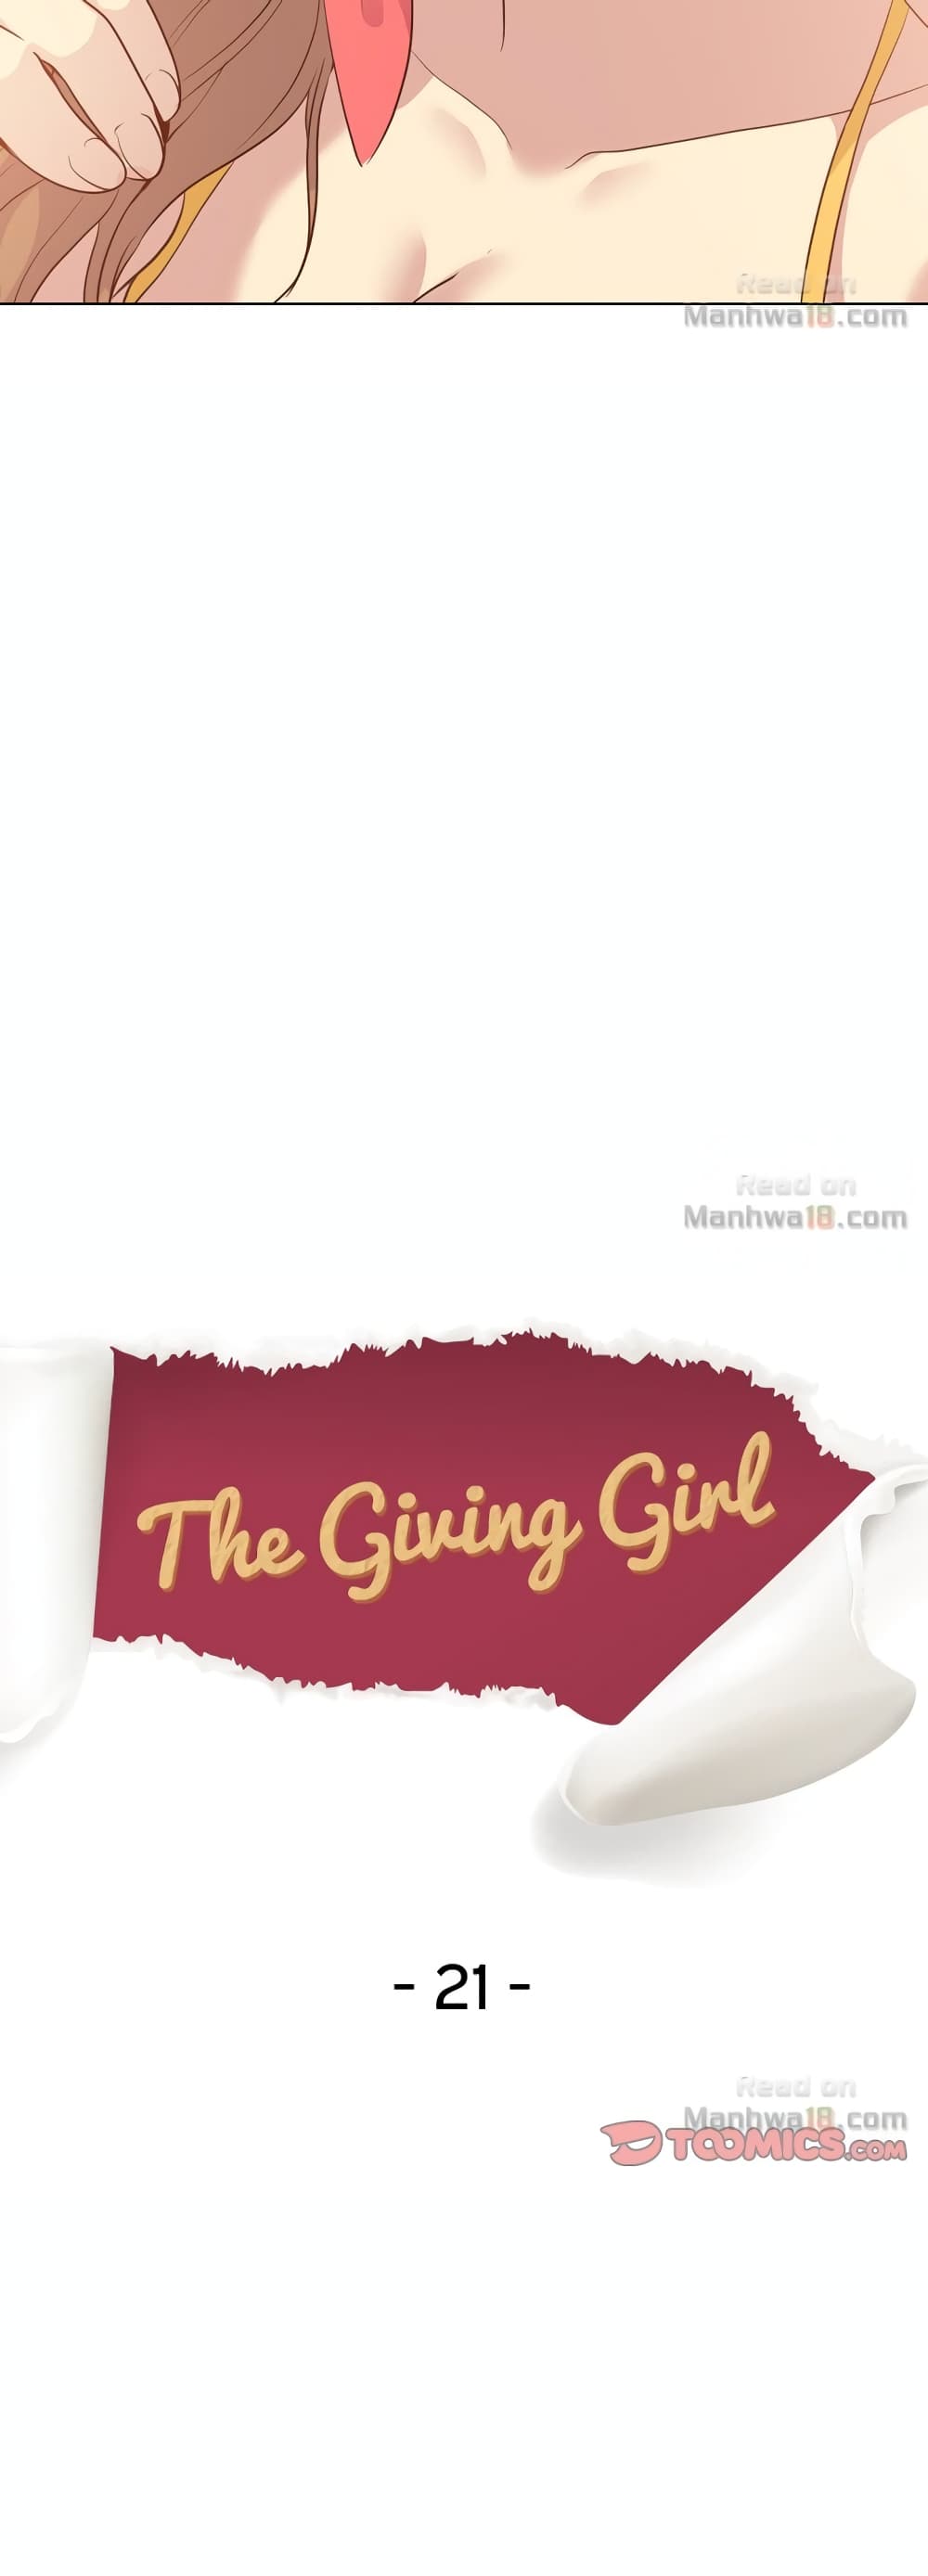 Giving Girl 21-21